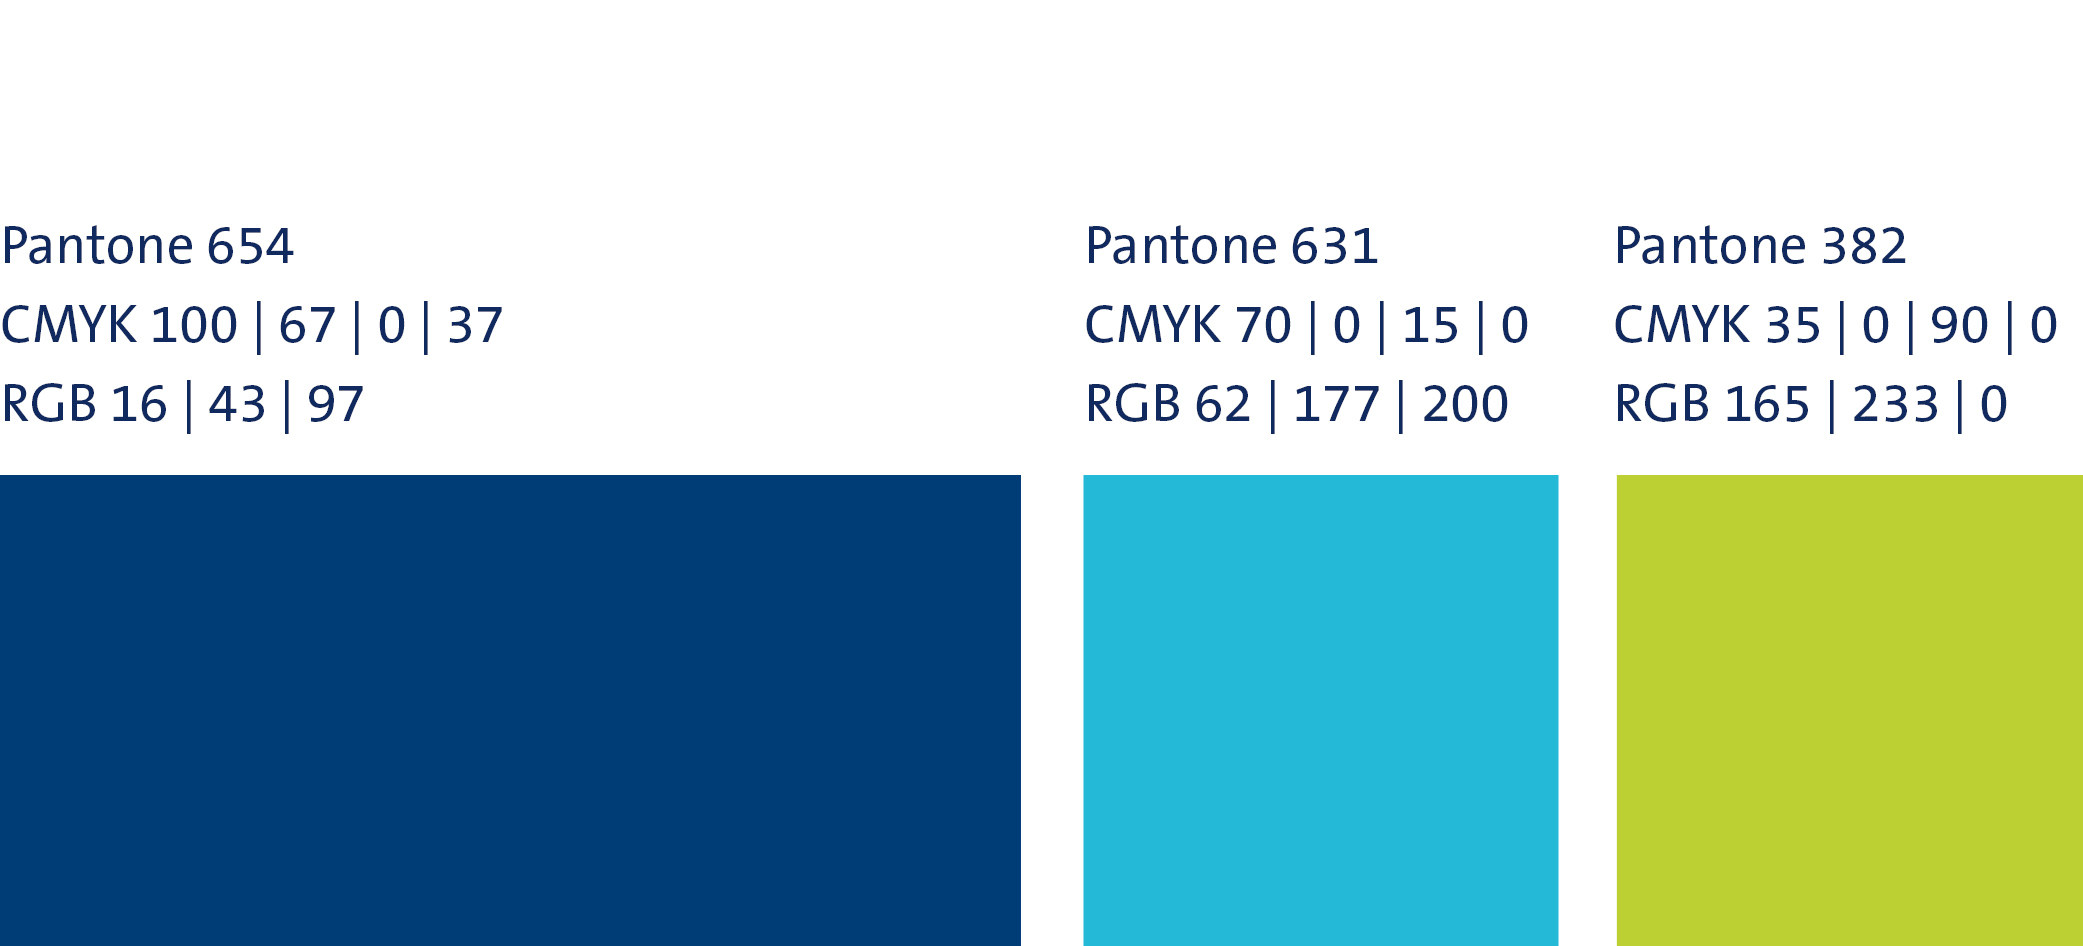 drei Pantone-Farben: 654, 631 und 382